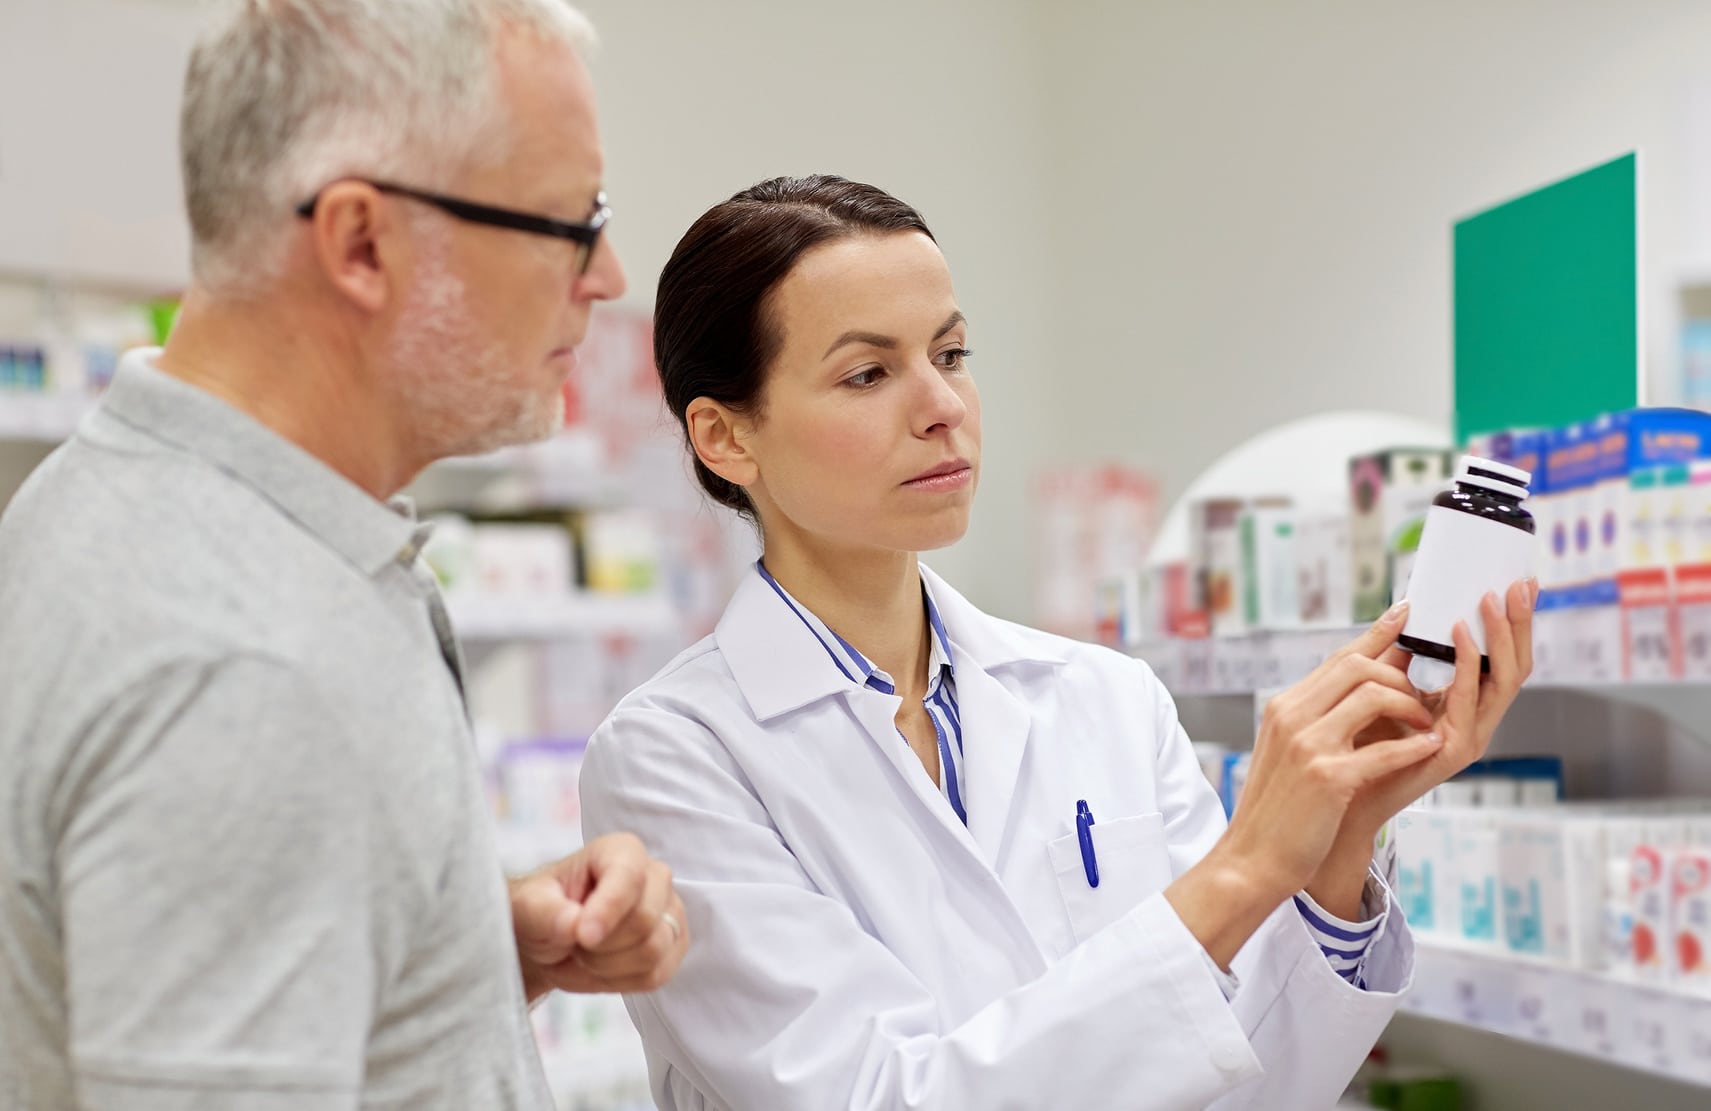 Pharmacist explaining prescription label to older man.